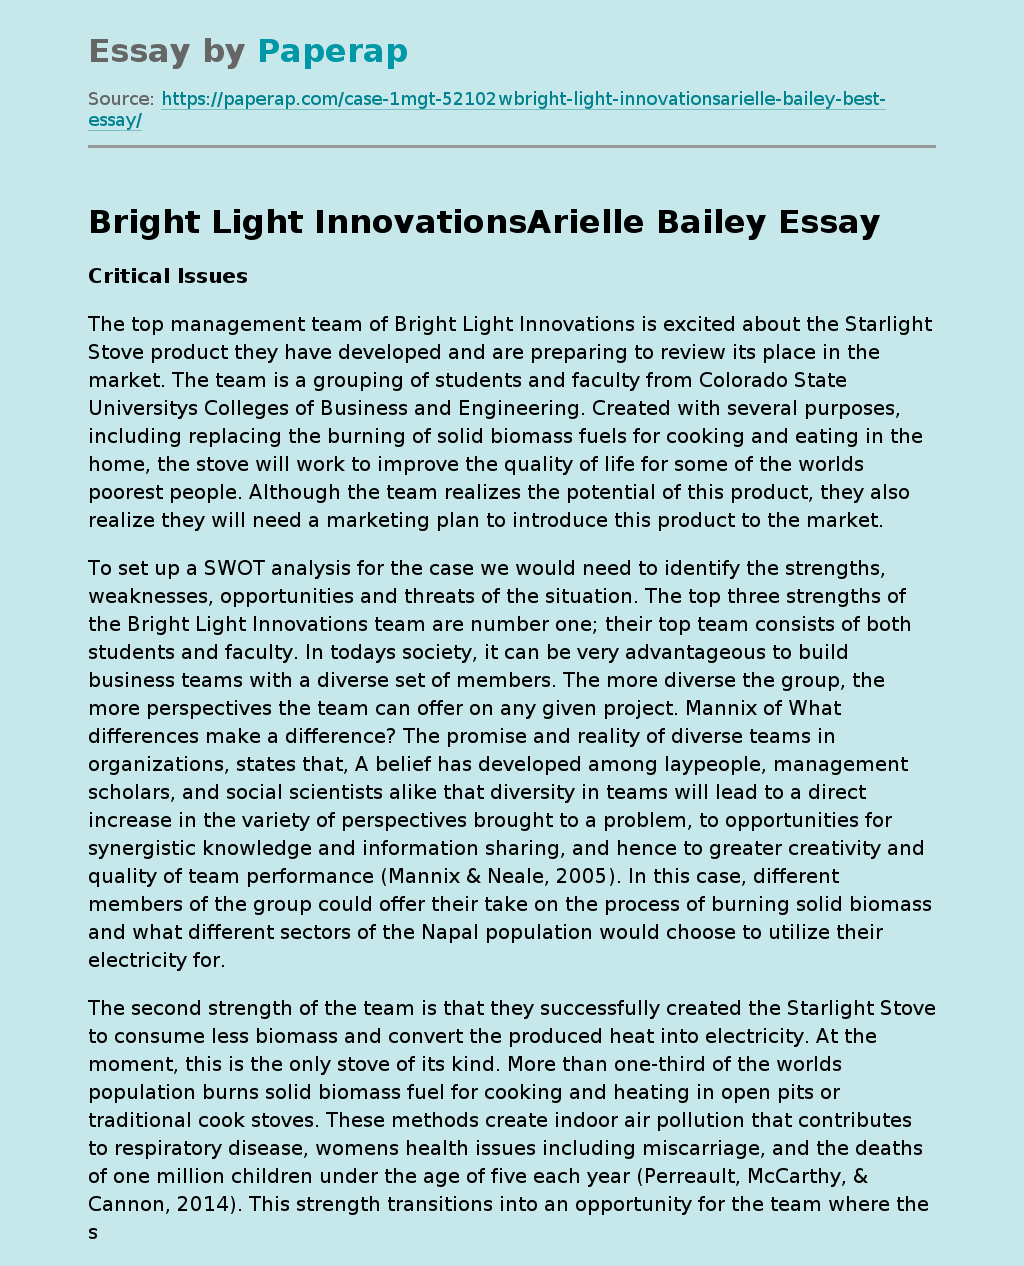 Bright Light InnovationsArielle Bailey